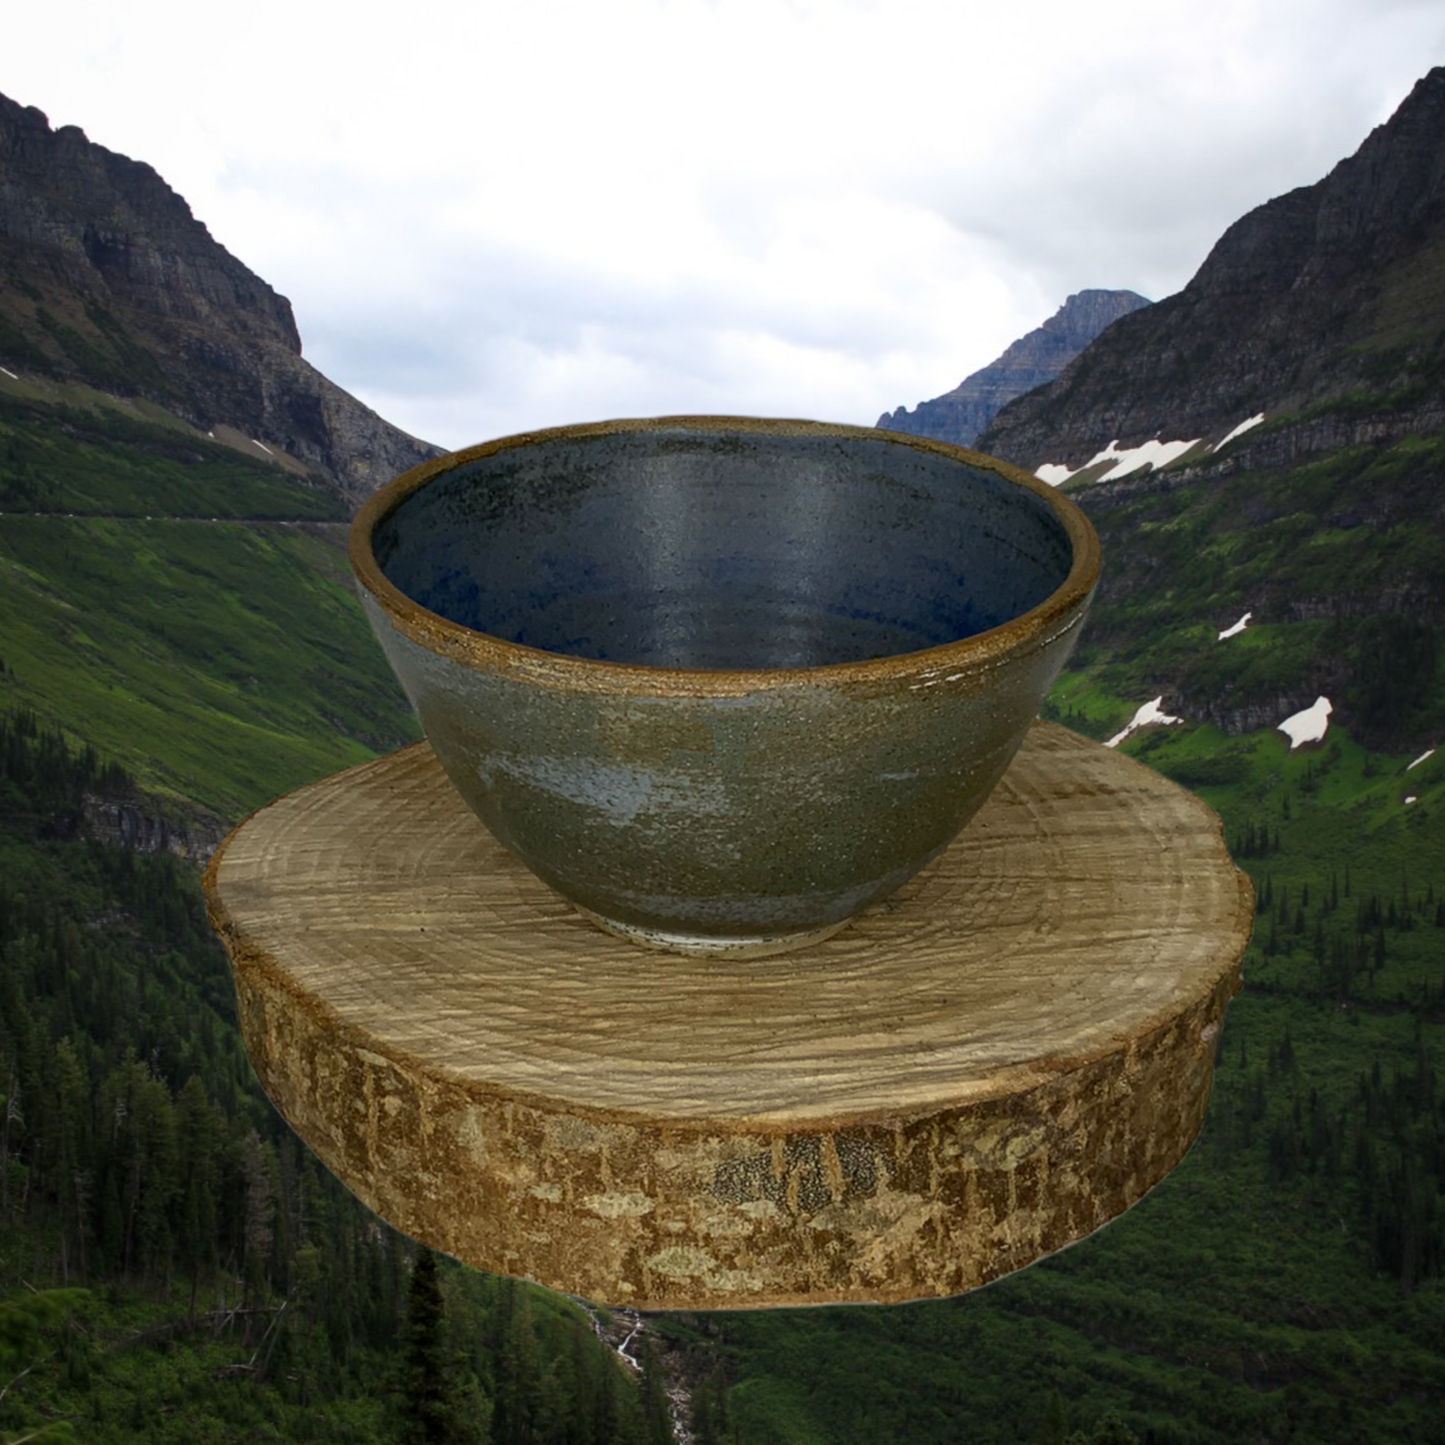 Earthenware bowls